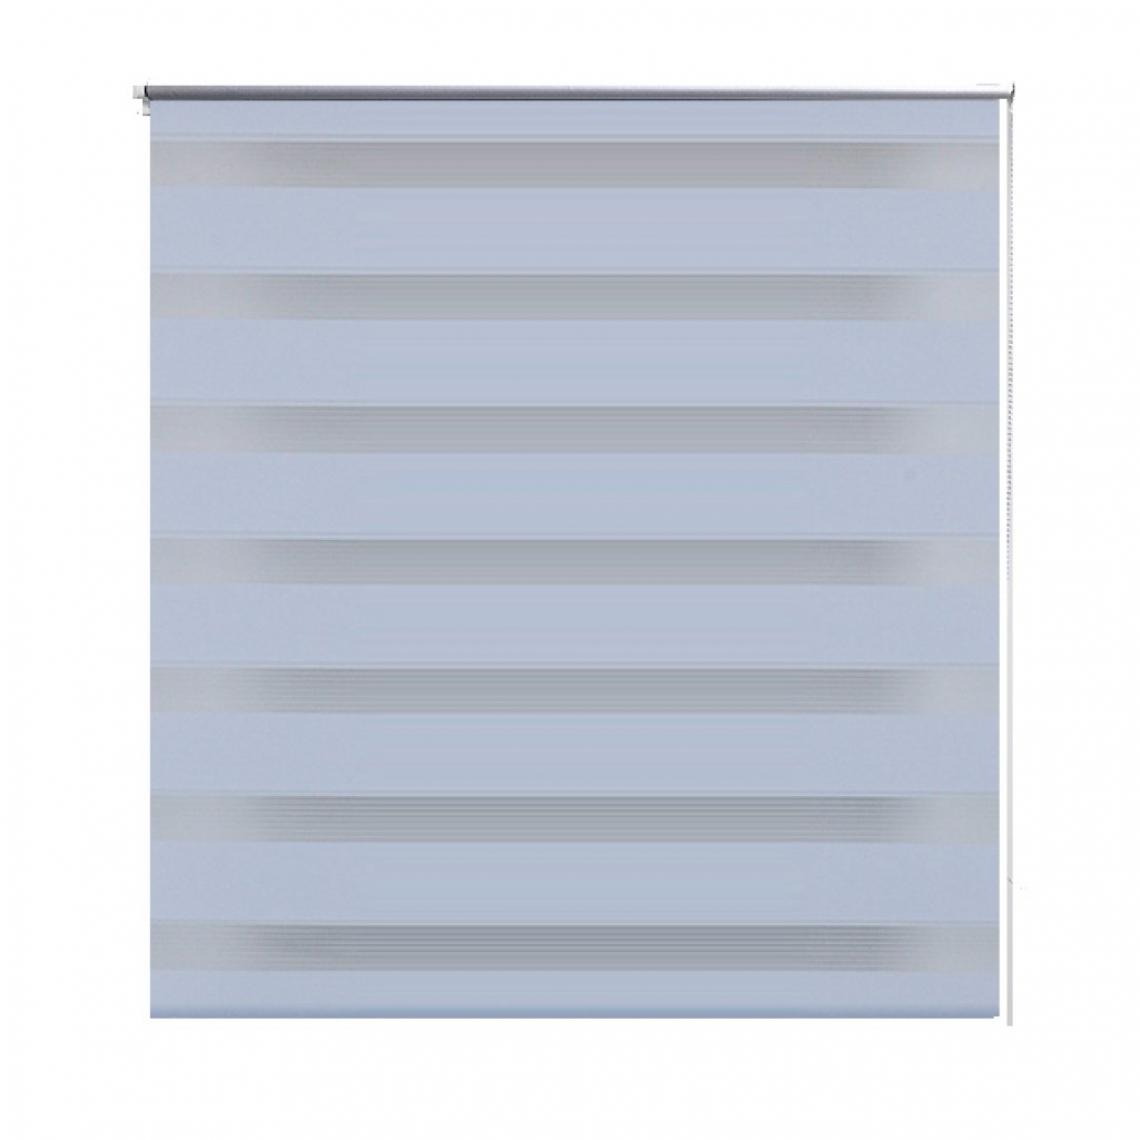 Helloshop26 - Store enrouleur blanc tamisant 80 x 150 cm fenêtre rideau pare-vue volet roulant 4102092 - Store compatible Velux